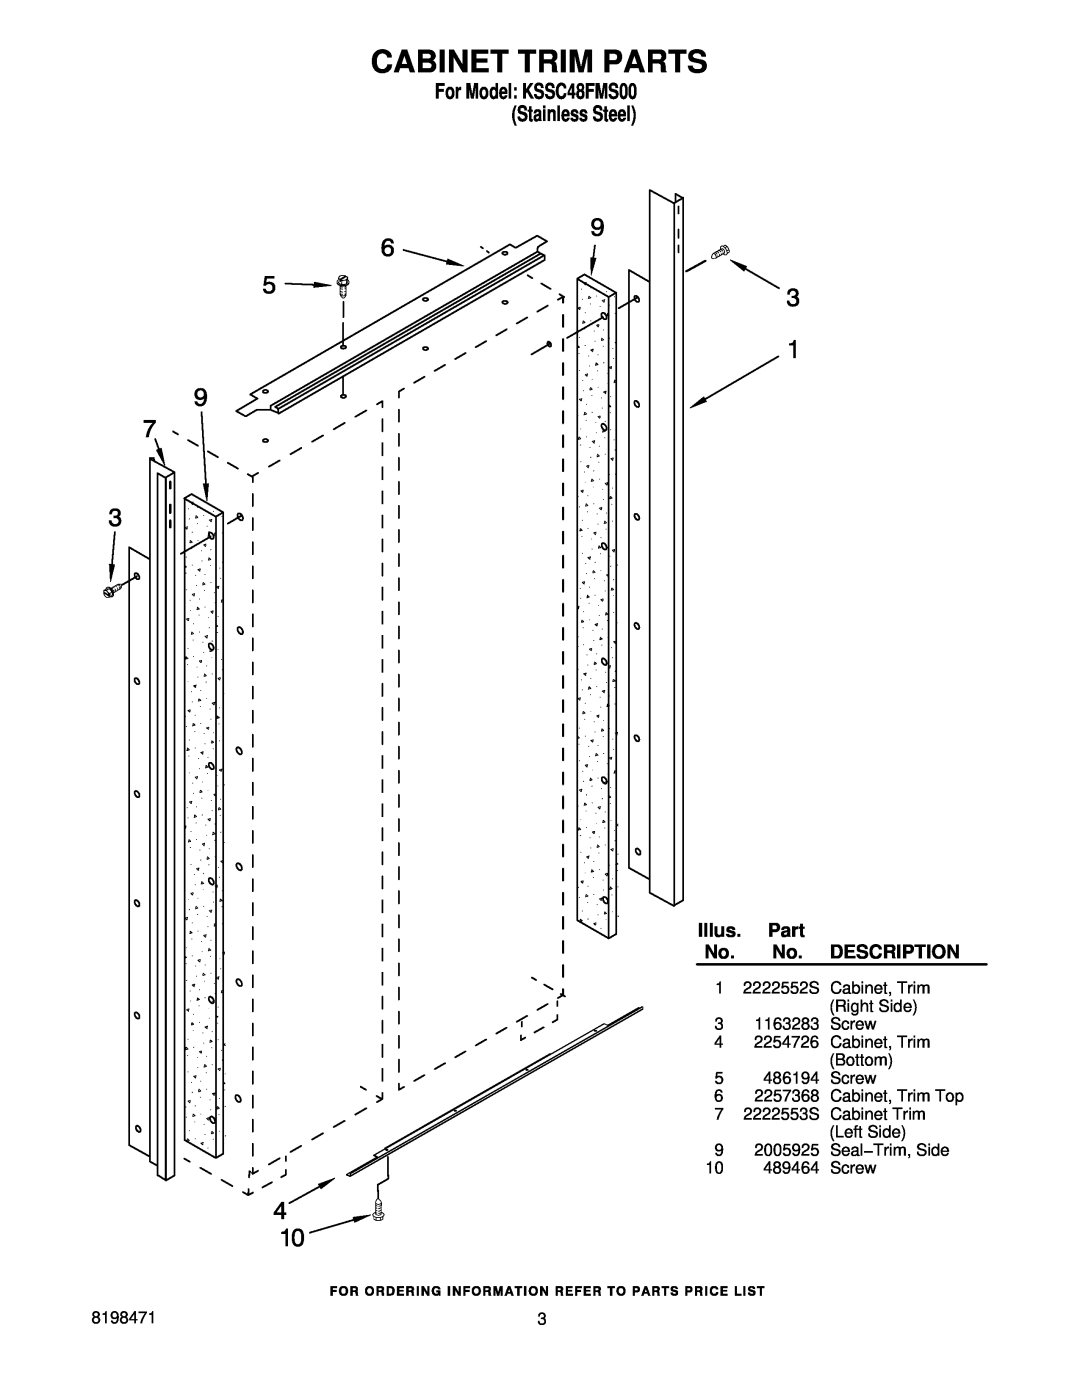 KitchenAid manual Cabinet Trim Parts, For Model KSSC48FMS00 Stainless Steel, Illus, Description 